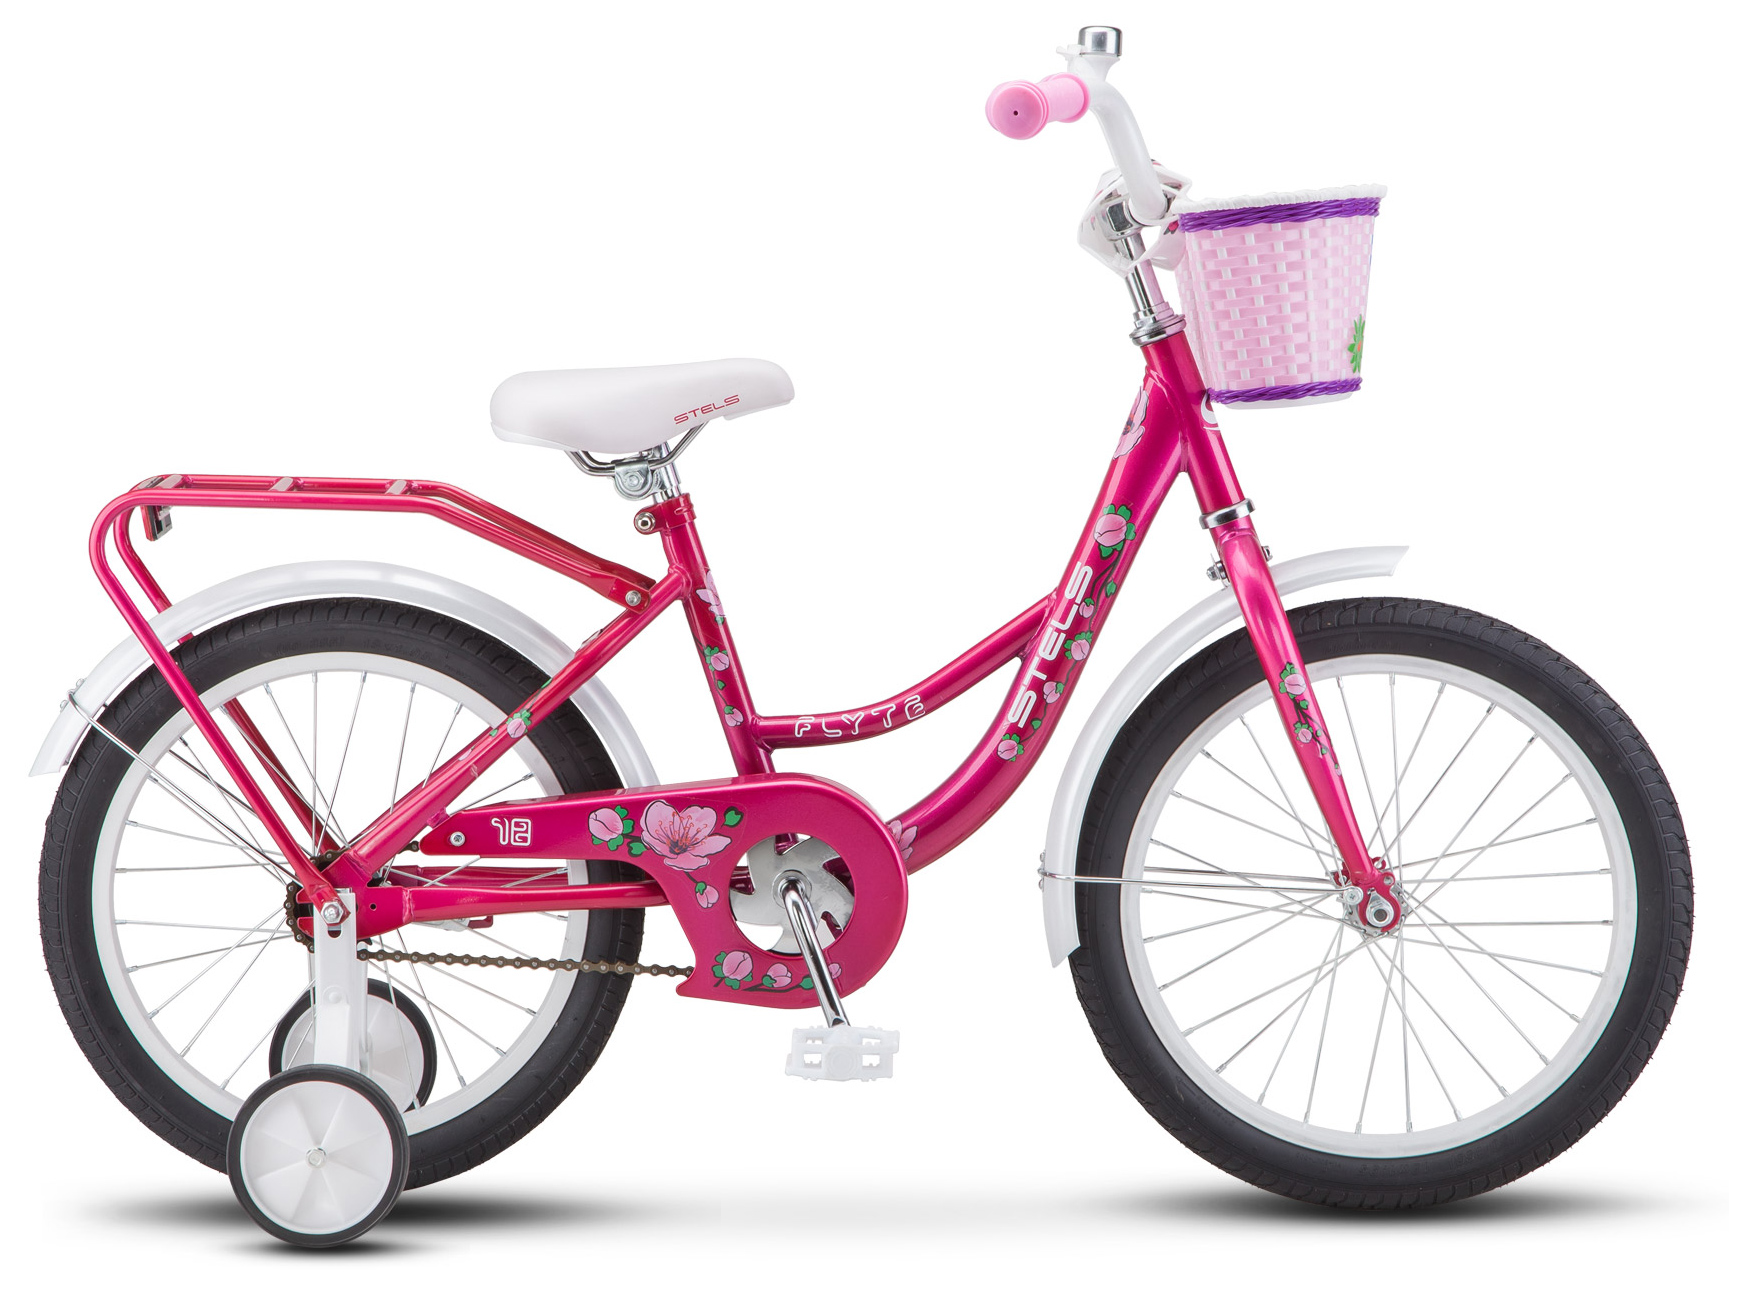  Отзывы о Трехколесный детский велосипед Stels Flyte Lady 18 (Z011) 2019